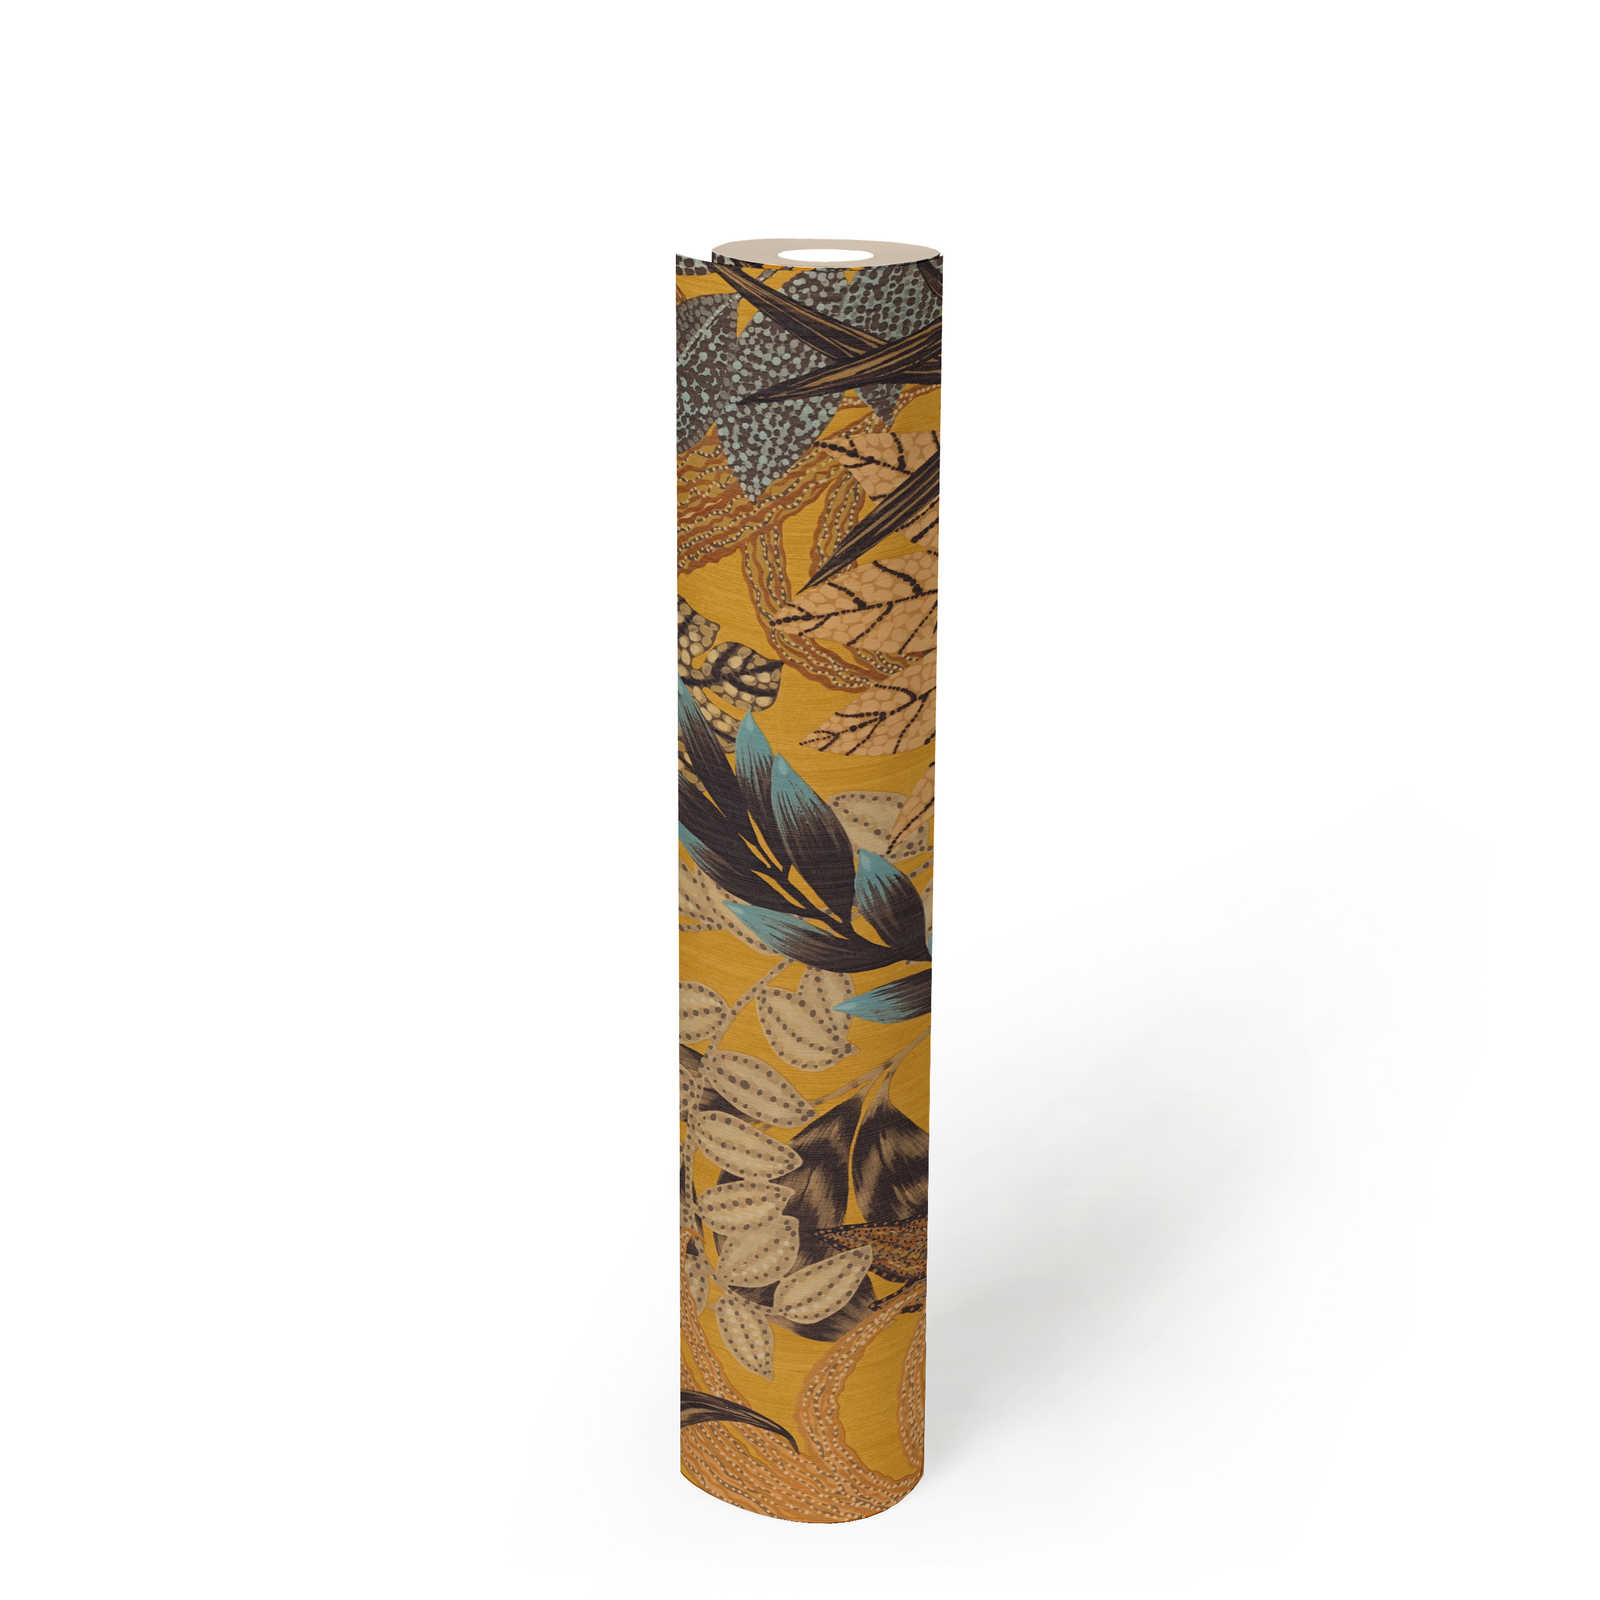             Tapete mit Blätter-Motiv in leuchtenden Farben – Braun, Bunt, Gelb
        